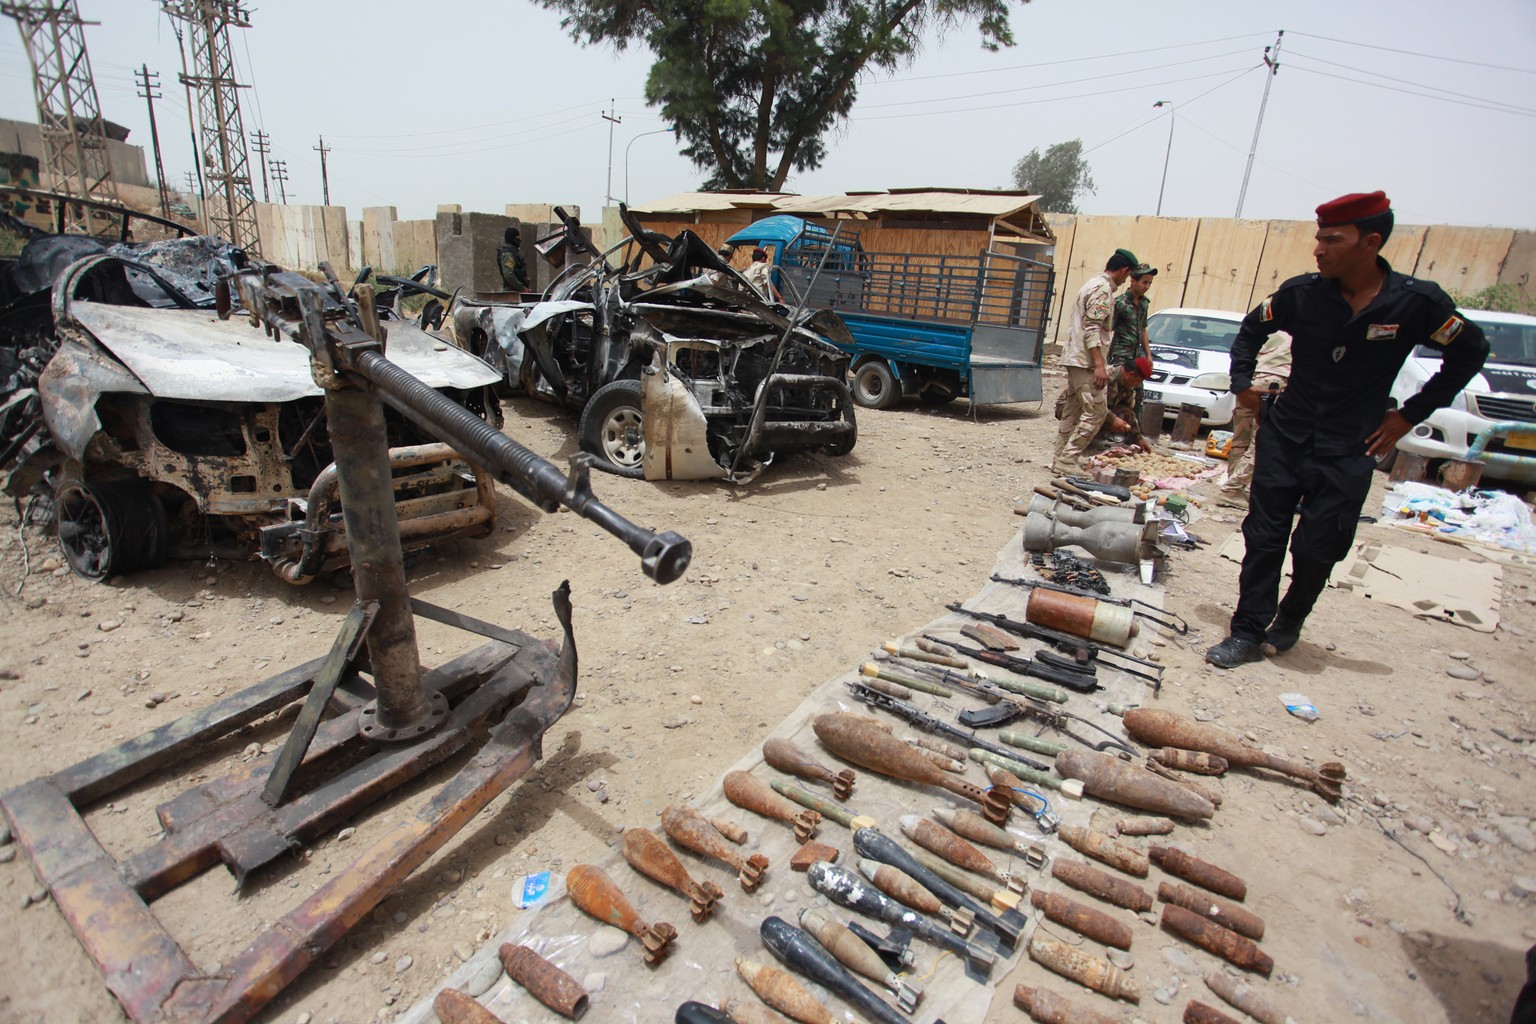 Irakische Sicherheitskräfte beim Begutachten von konfiszierten Waffen